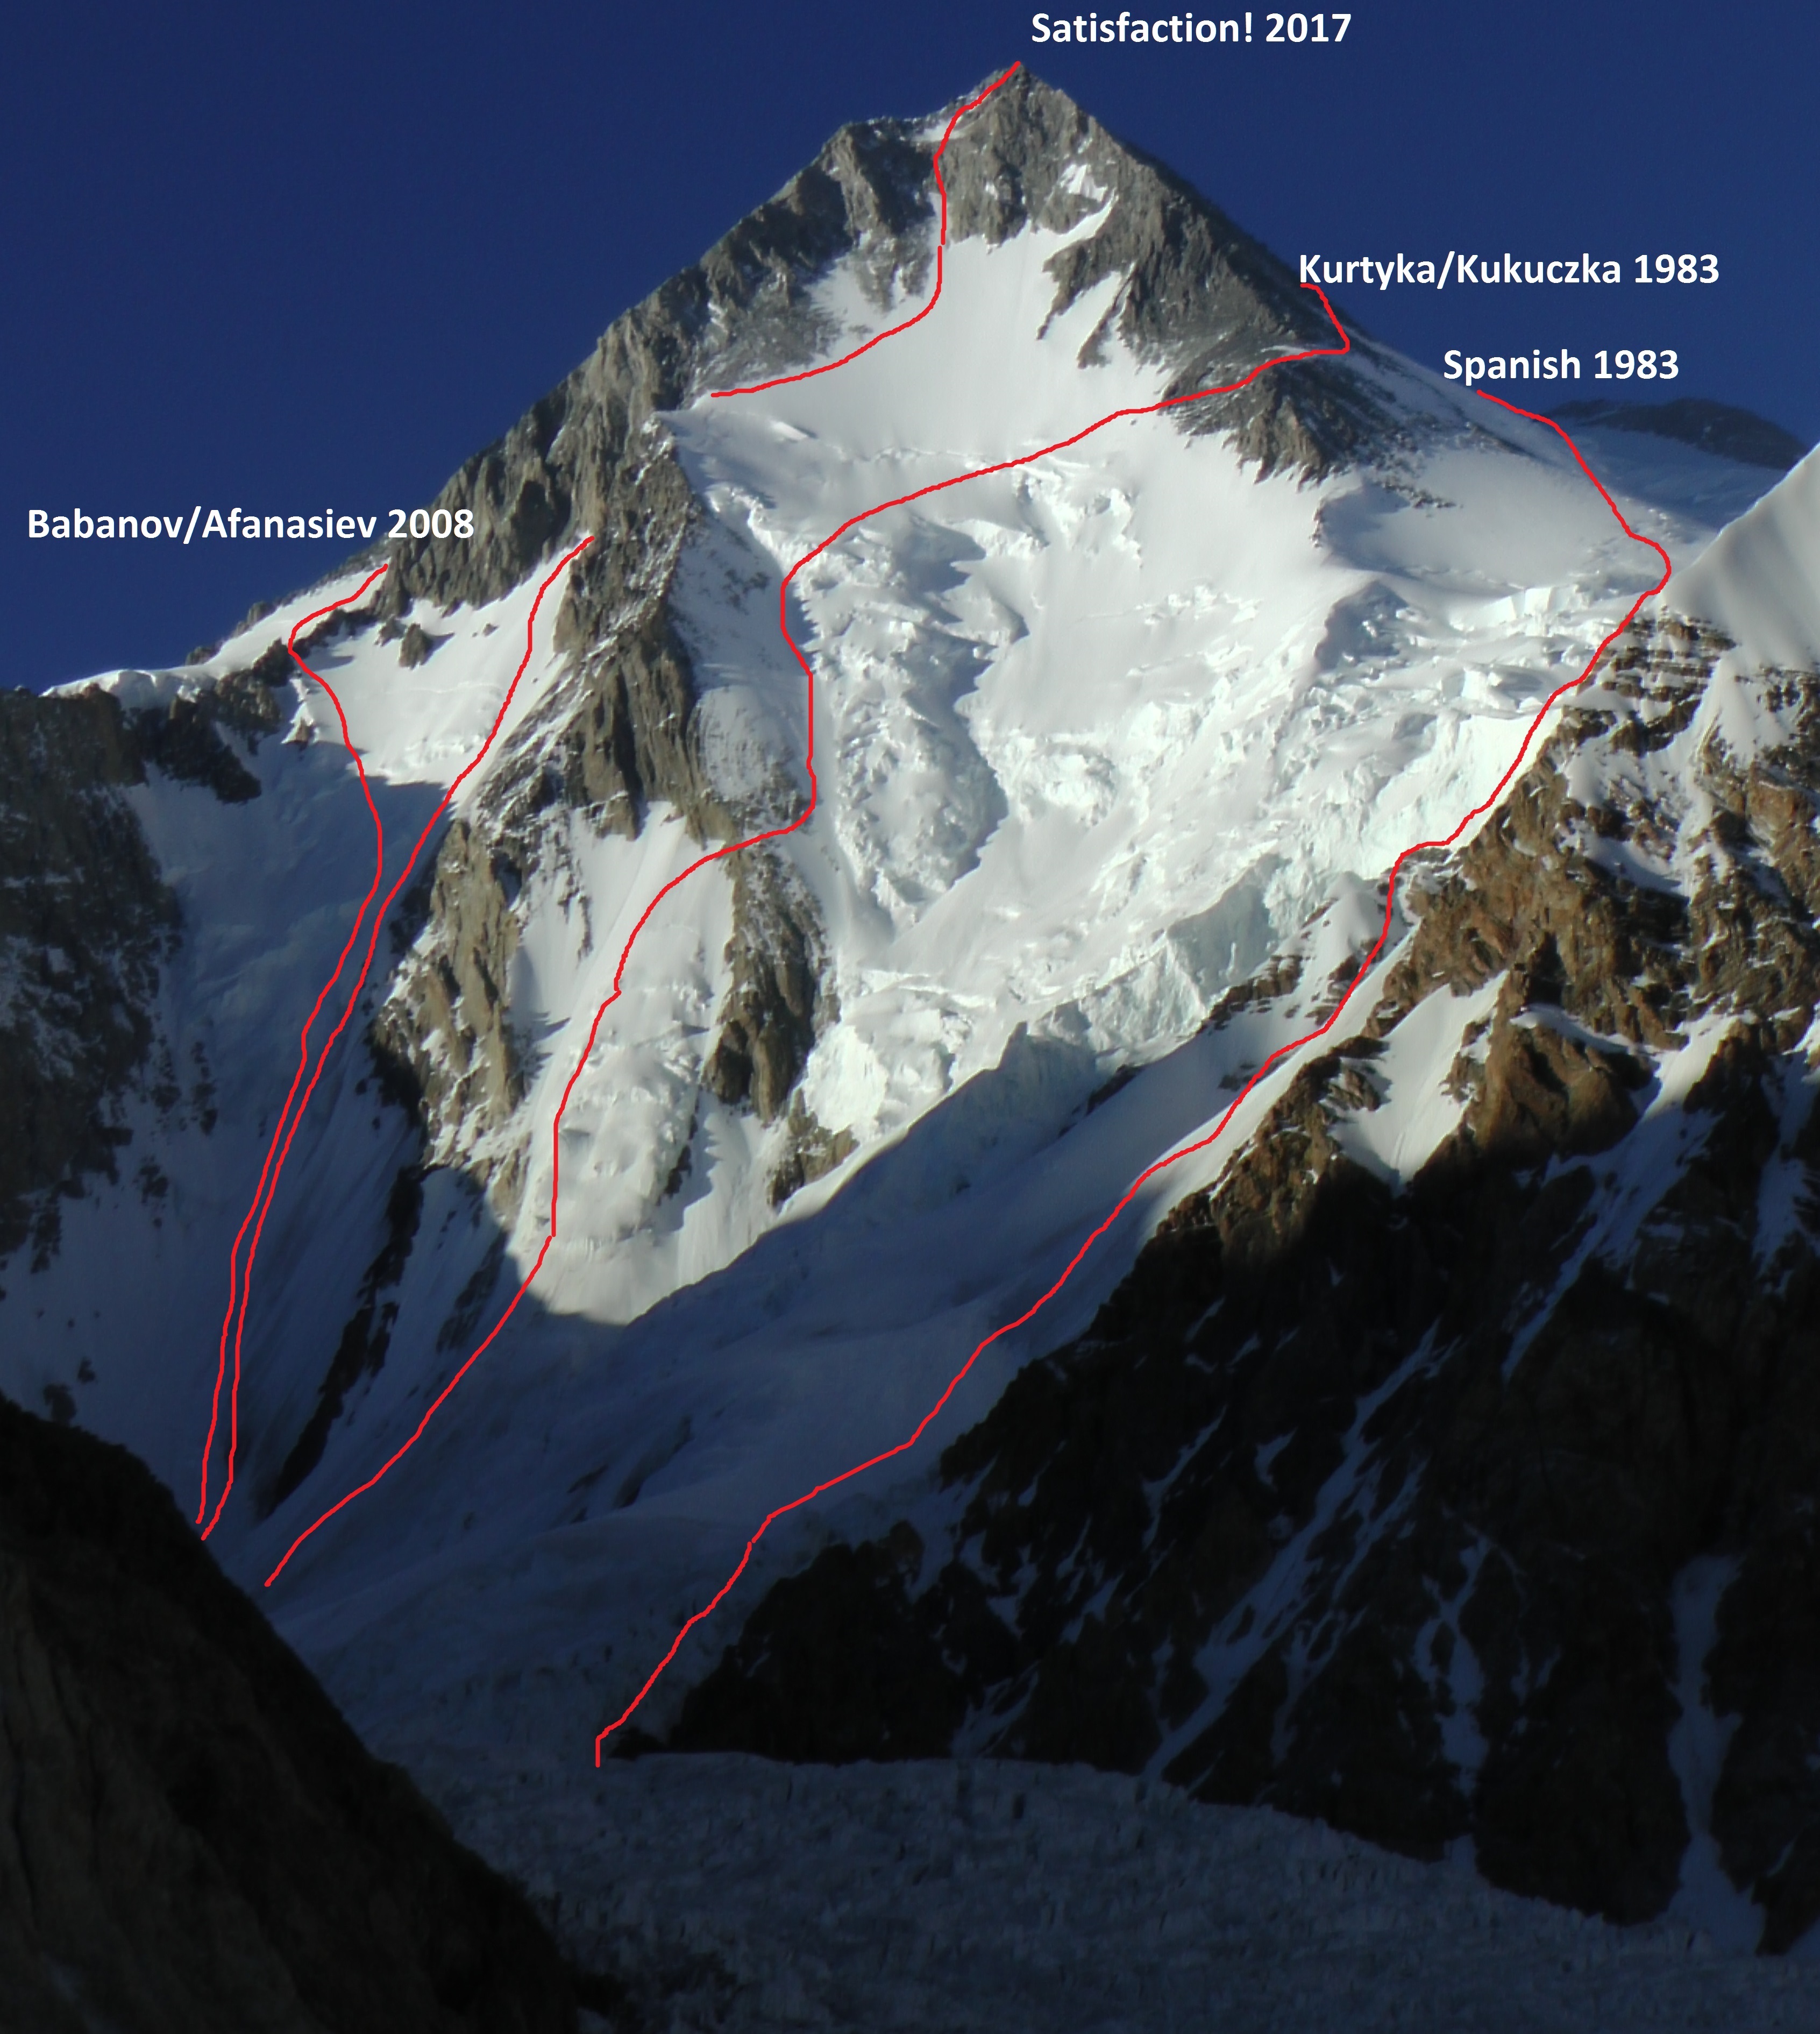 Гашербрум I (Gasherbrum I, 8080 м)  - новый чешский маршрут Satisfaction по Юго-Западной стене